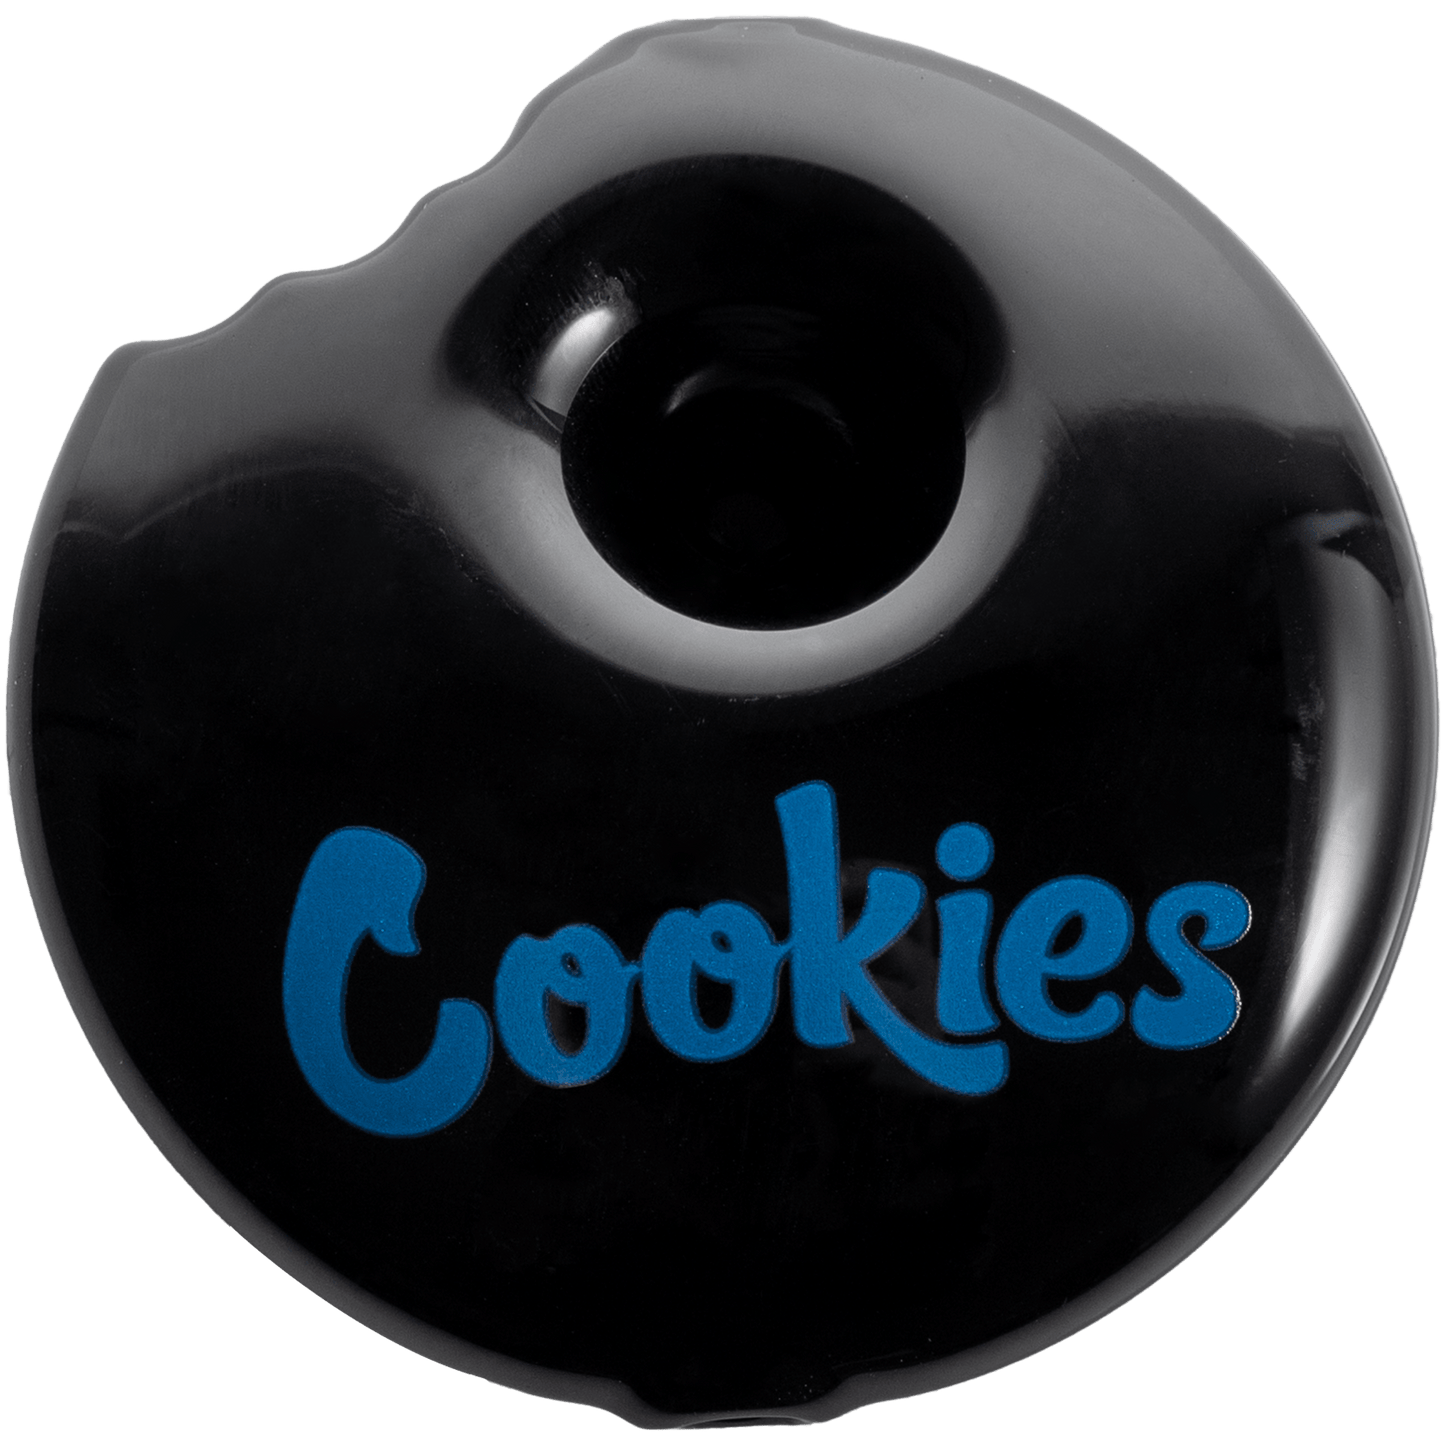 Cookies Hand Pipe Black Cookies Bite Pipe